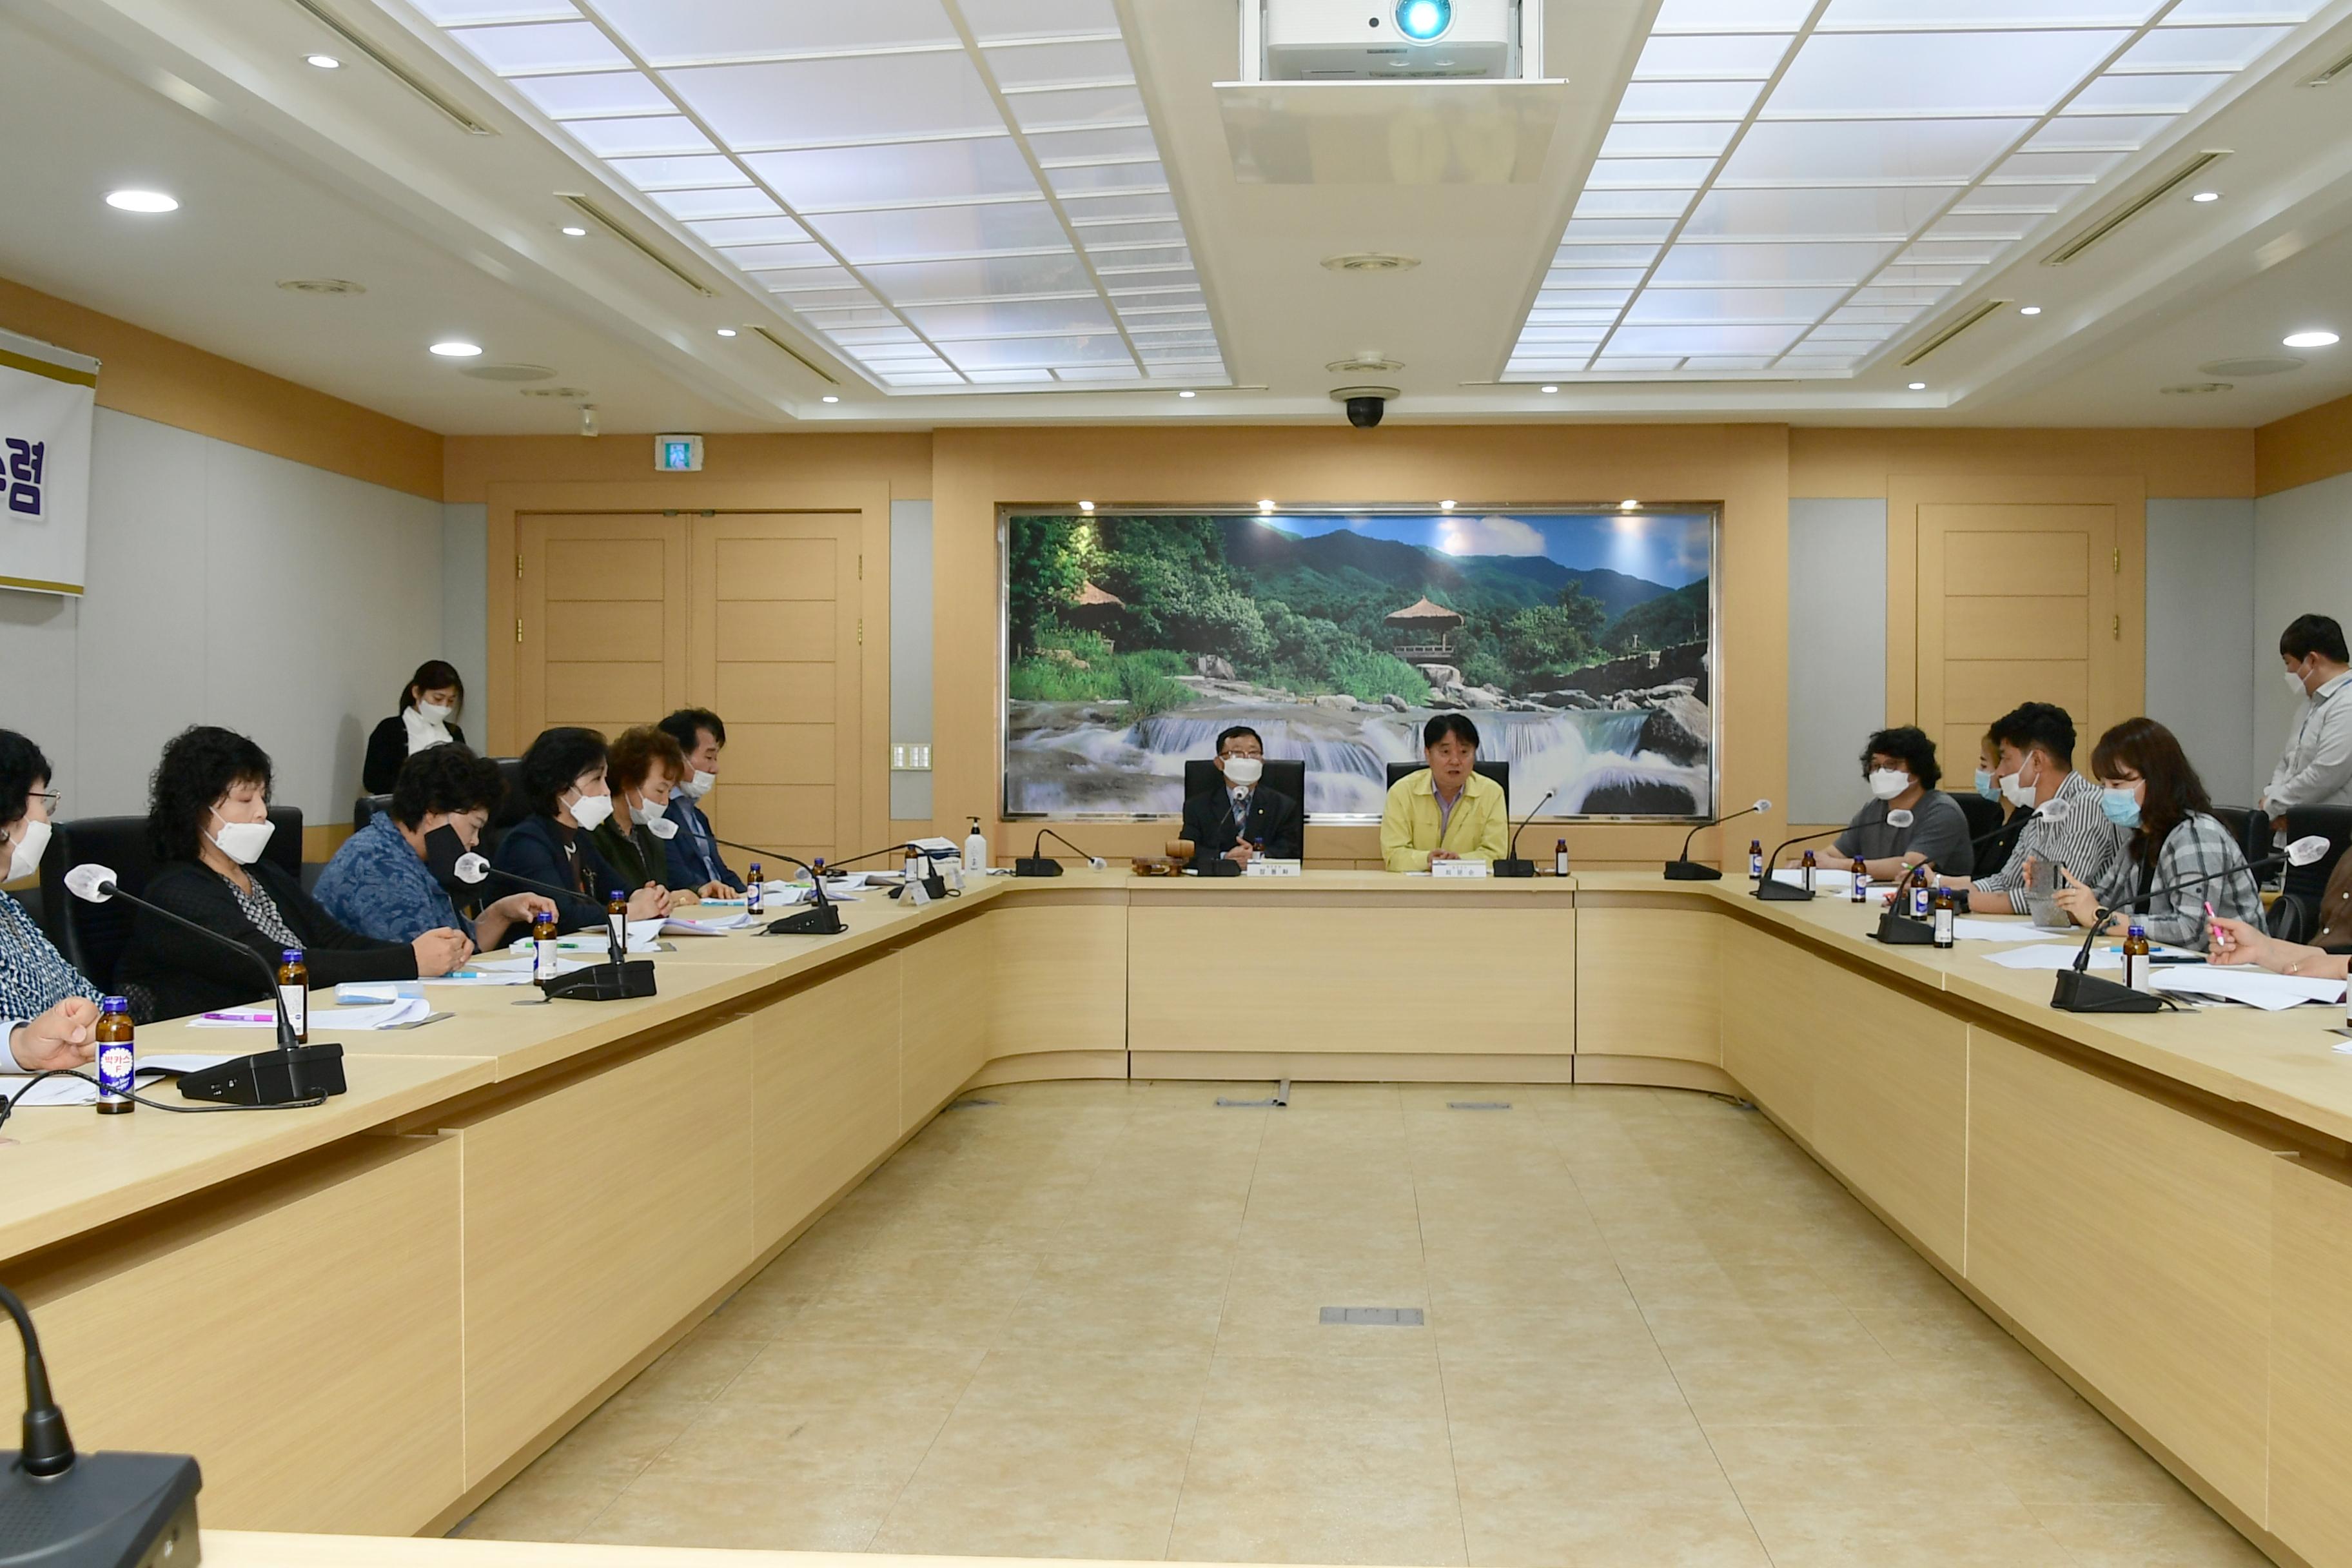 2020 제19기 민주평화통일 자문위원회 정기회의 의 사진